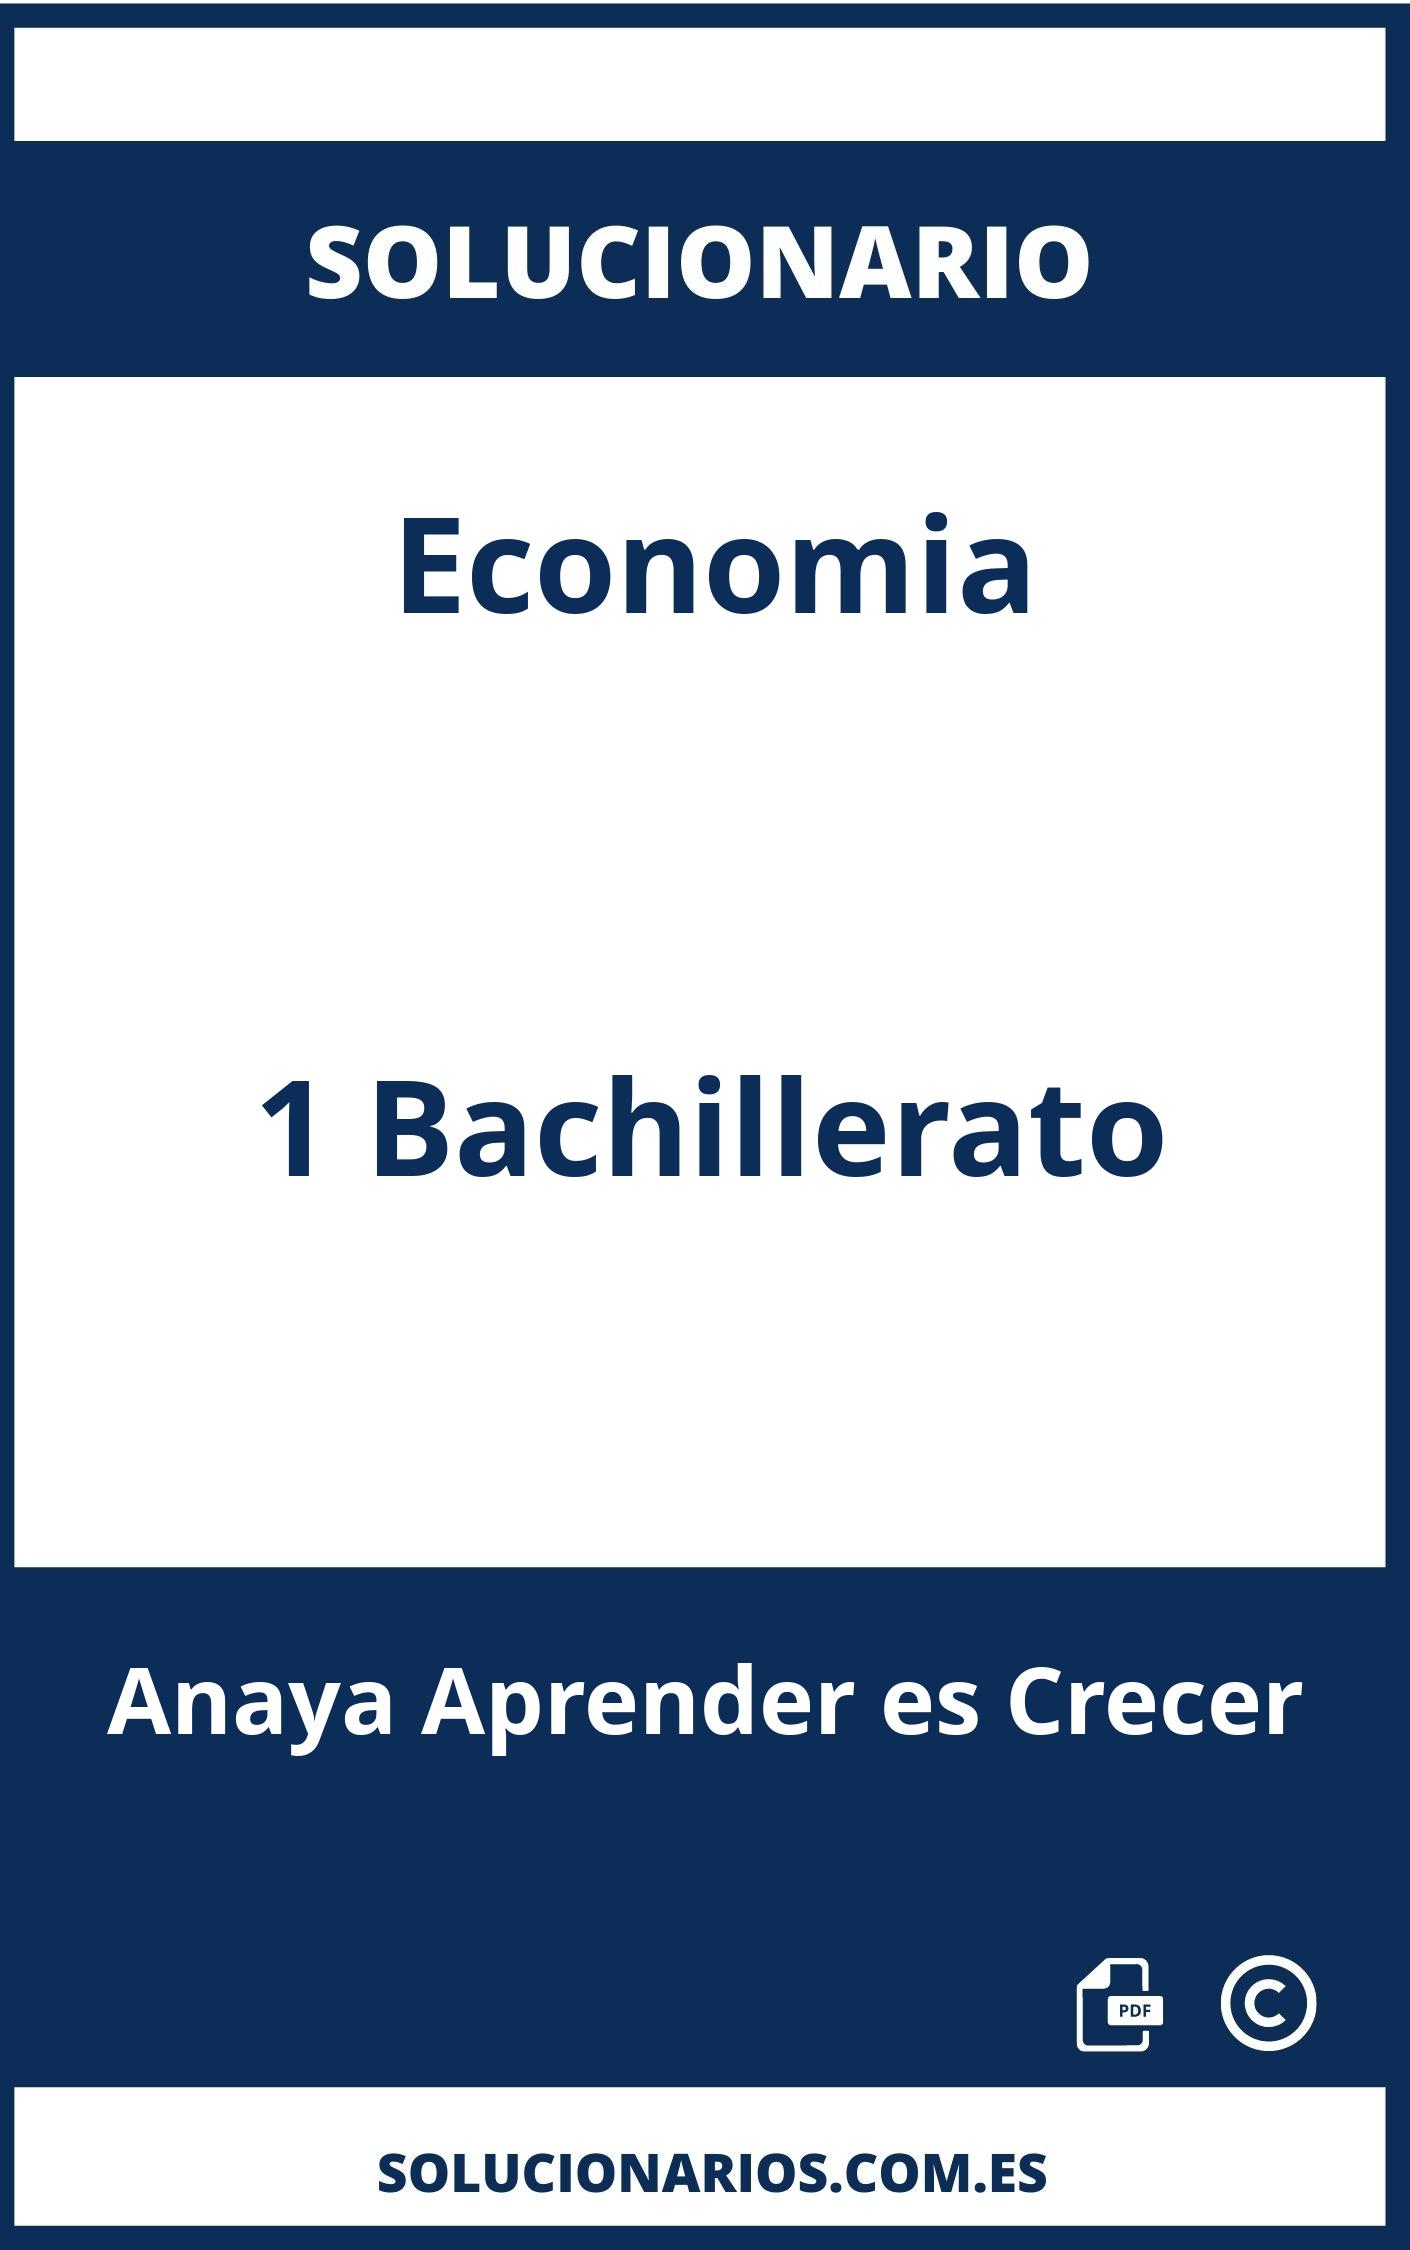 Solucionario Economia 1 Bachillerato Anaya Aprender es Crecer